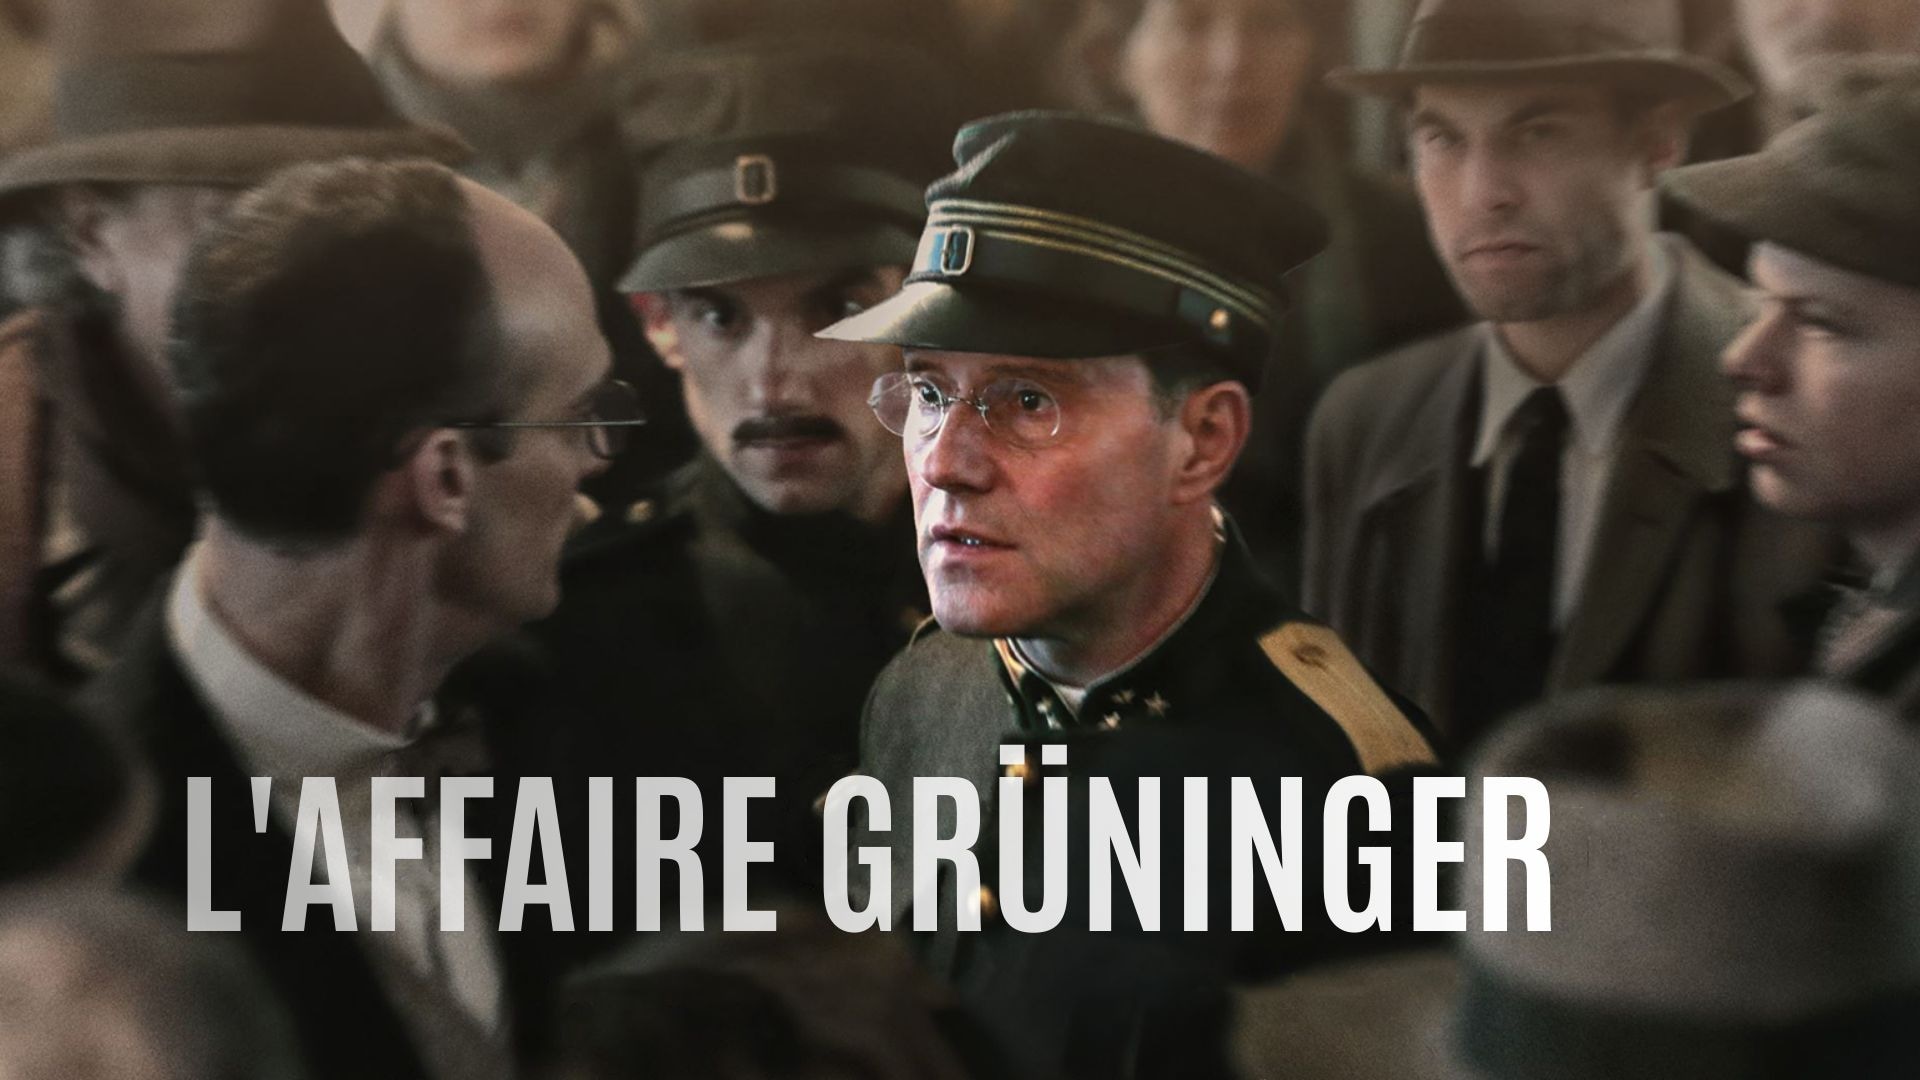 L'Affaire Grüninger